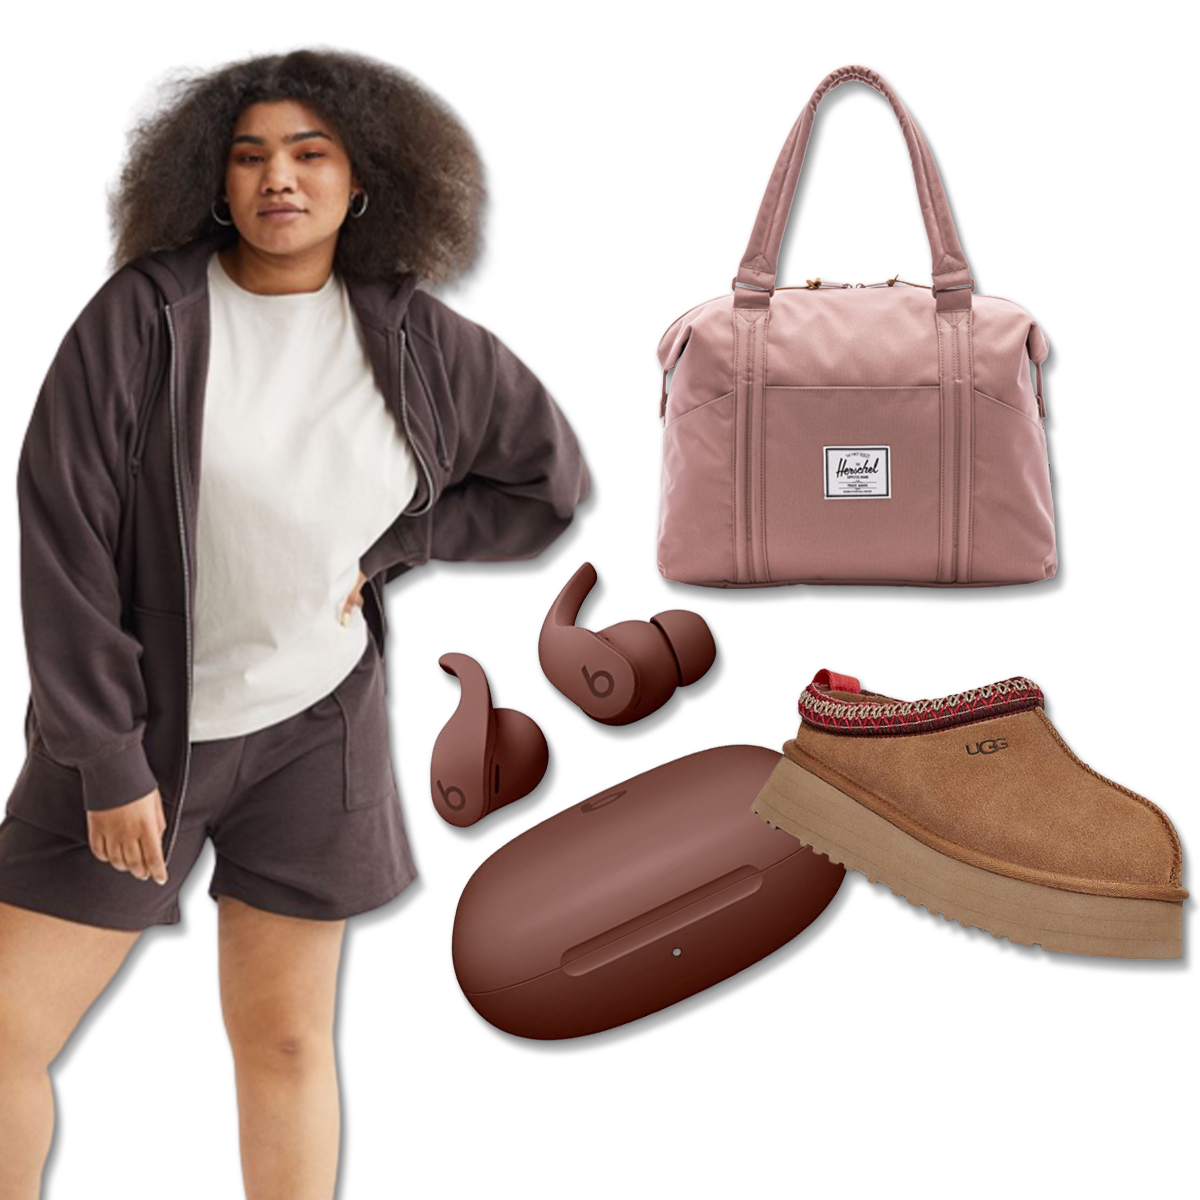 Bershka faux leather legging in brown